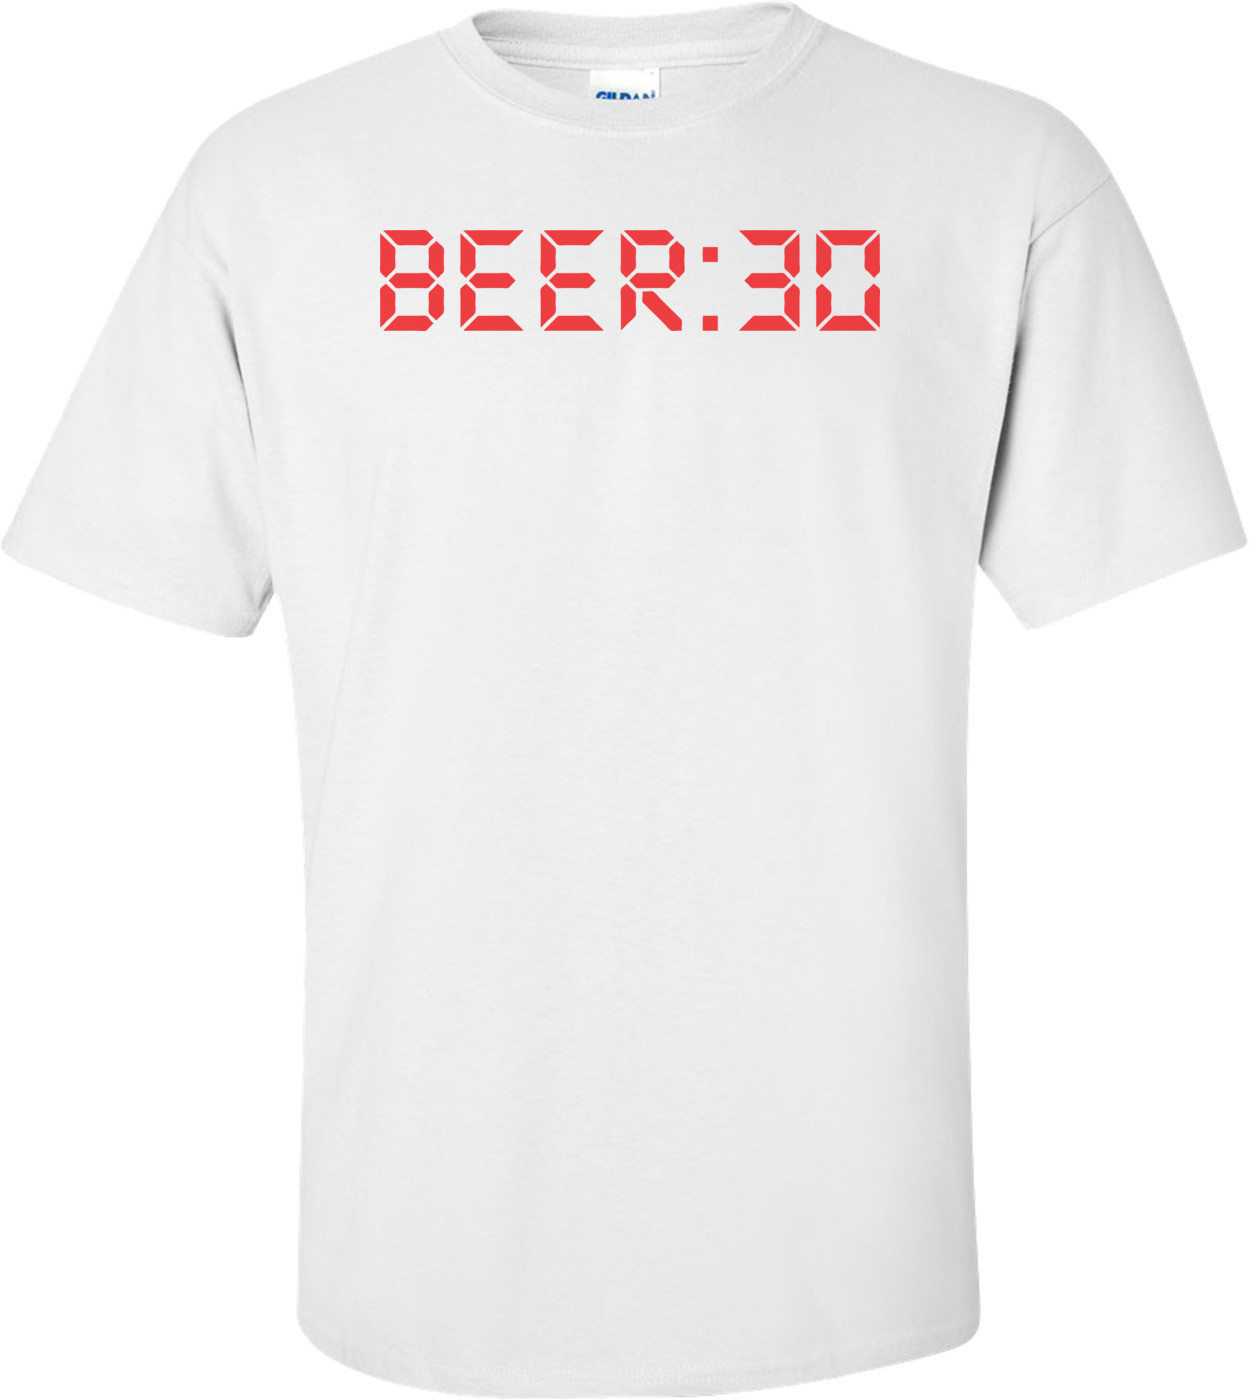 Beer:30 T-shirt